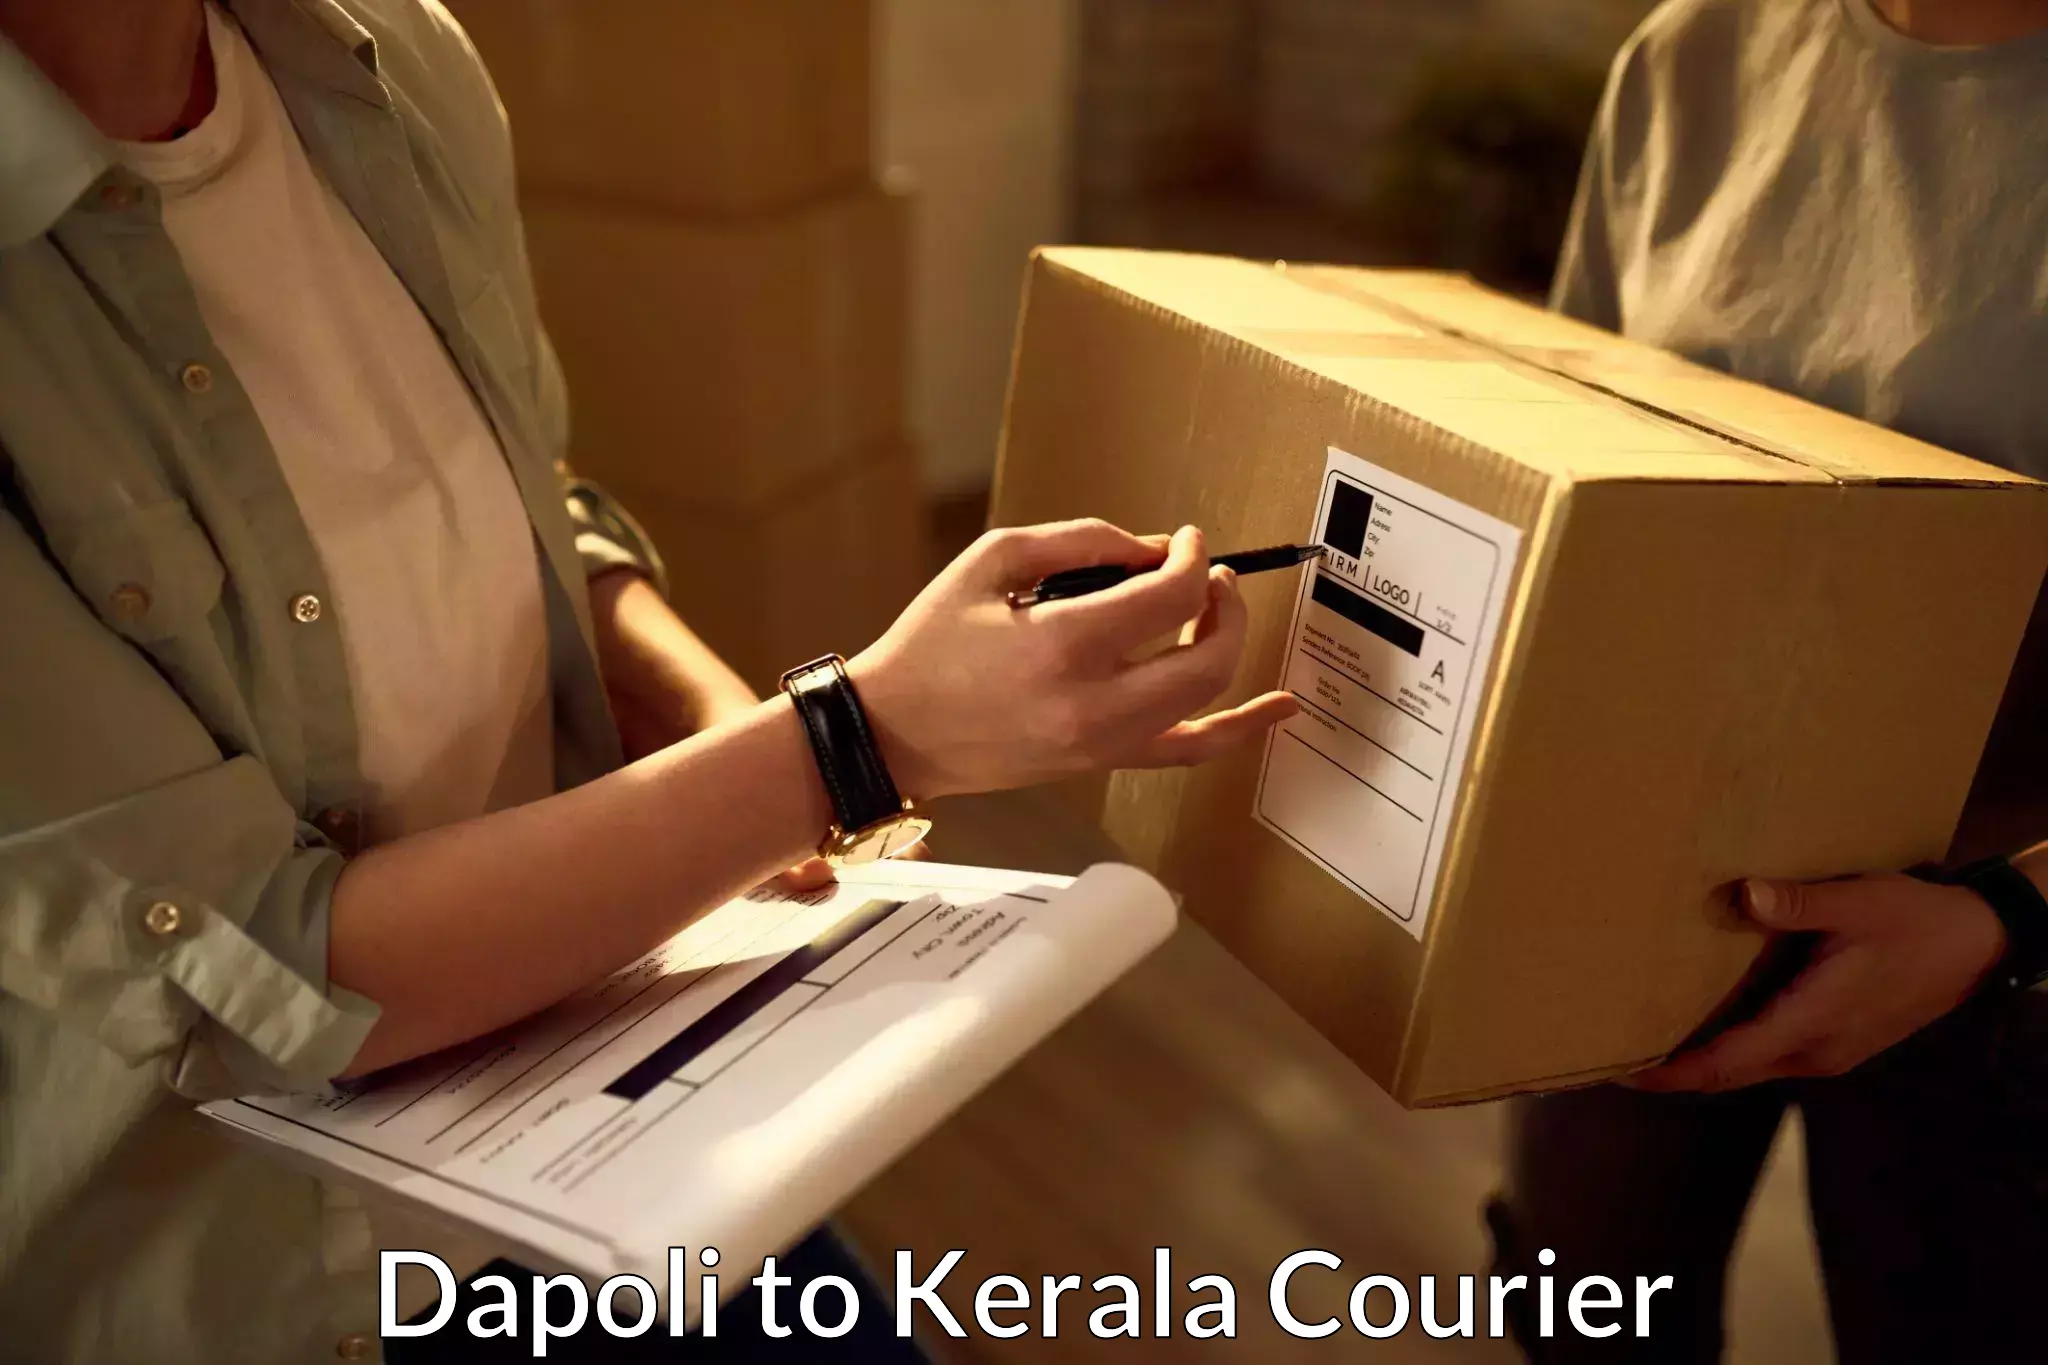 Dynamic courier services Dapoli to Kalpetta